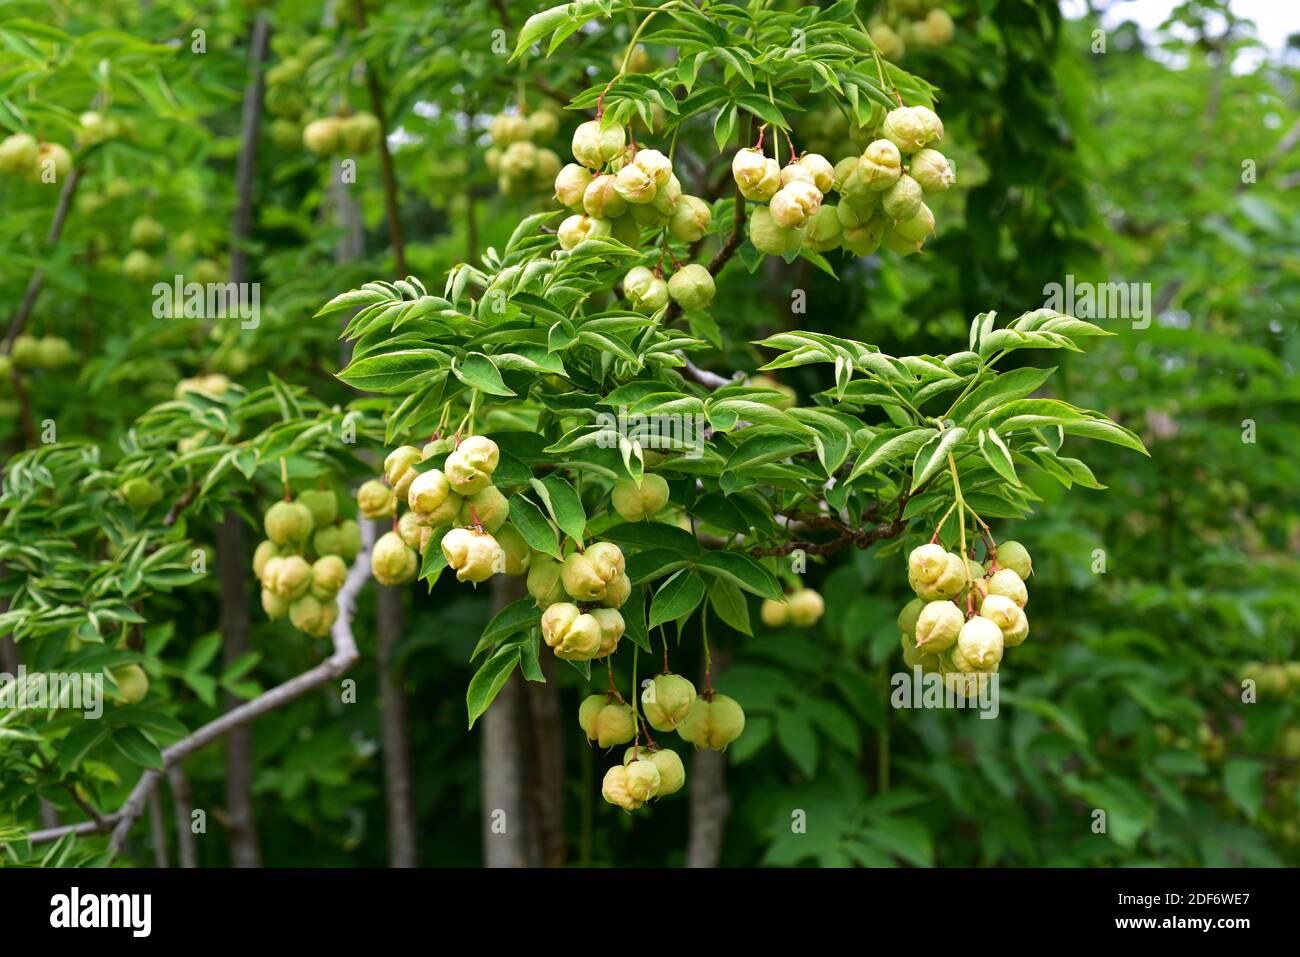 Europäische Blaswurzmutter (Staphylea pinnata) ist ein kleiner Baum, der in Mitteleuropa beheimatet ist. Seine Samen sind essbar. Stockfoto